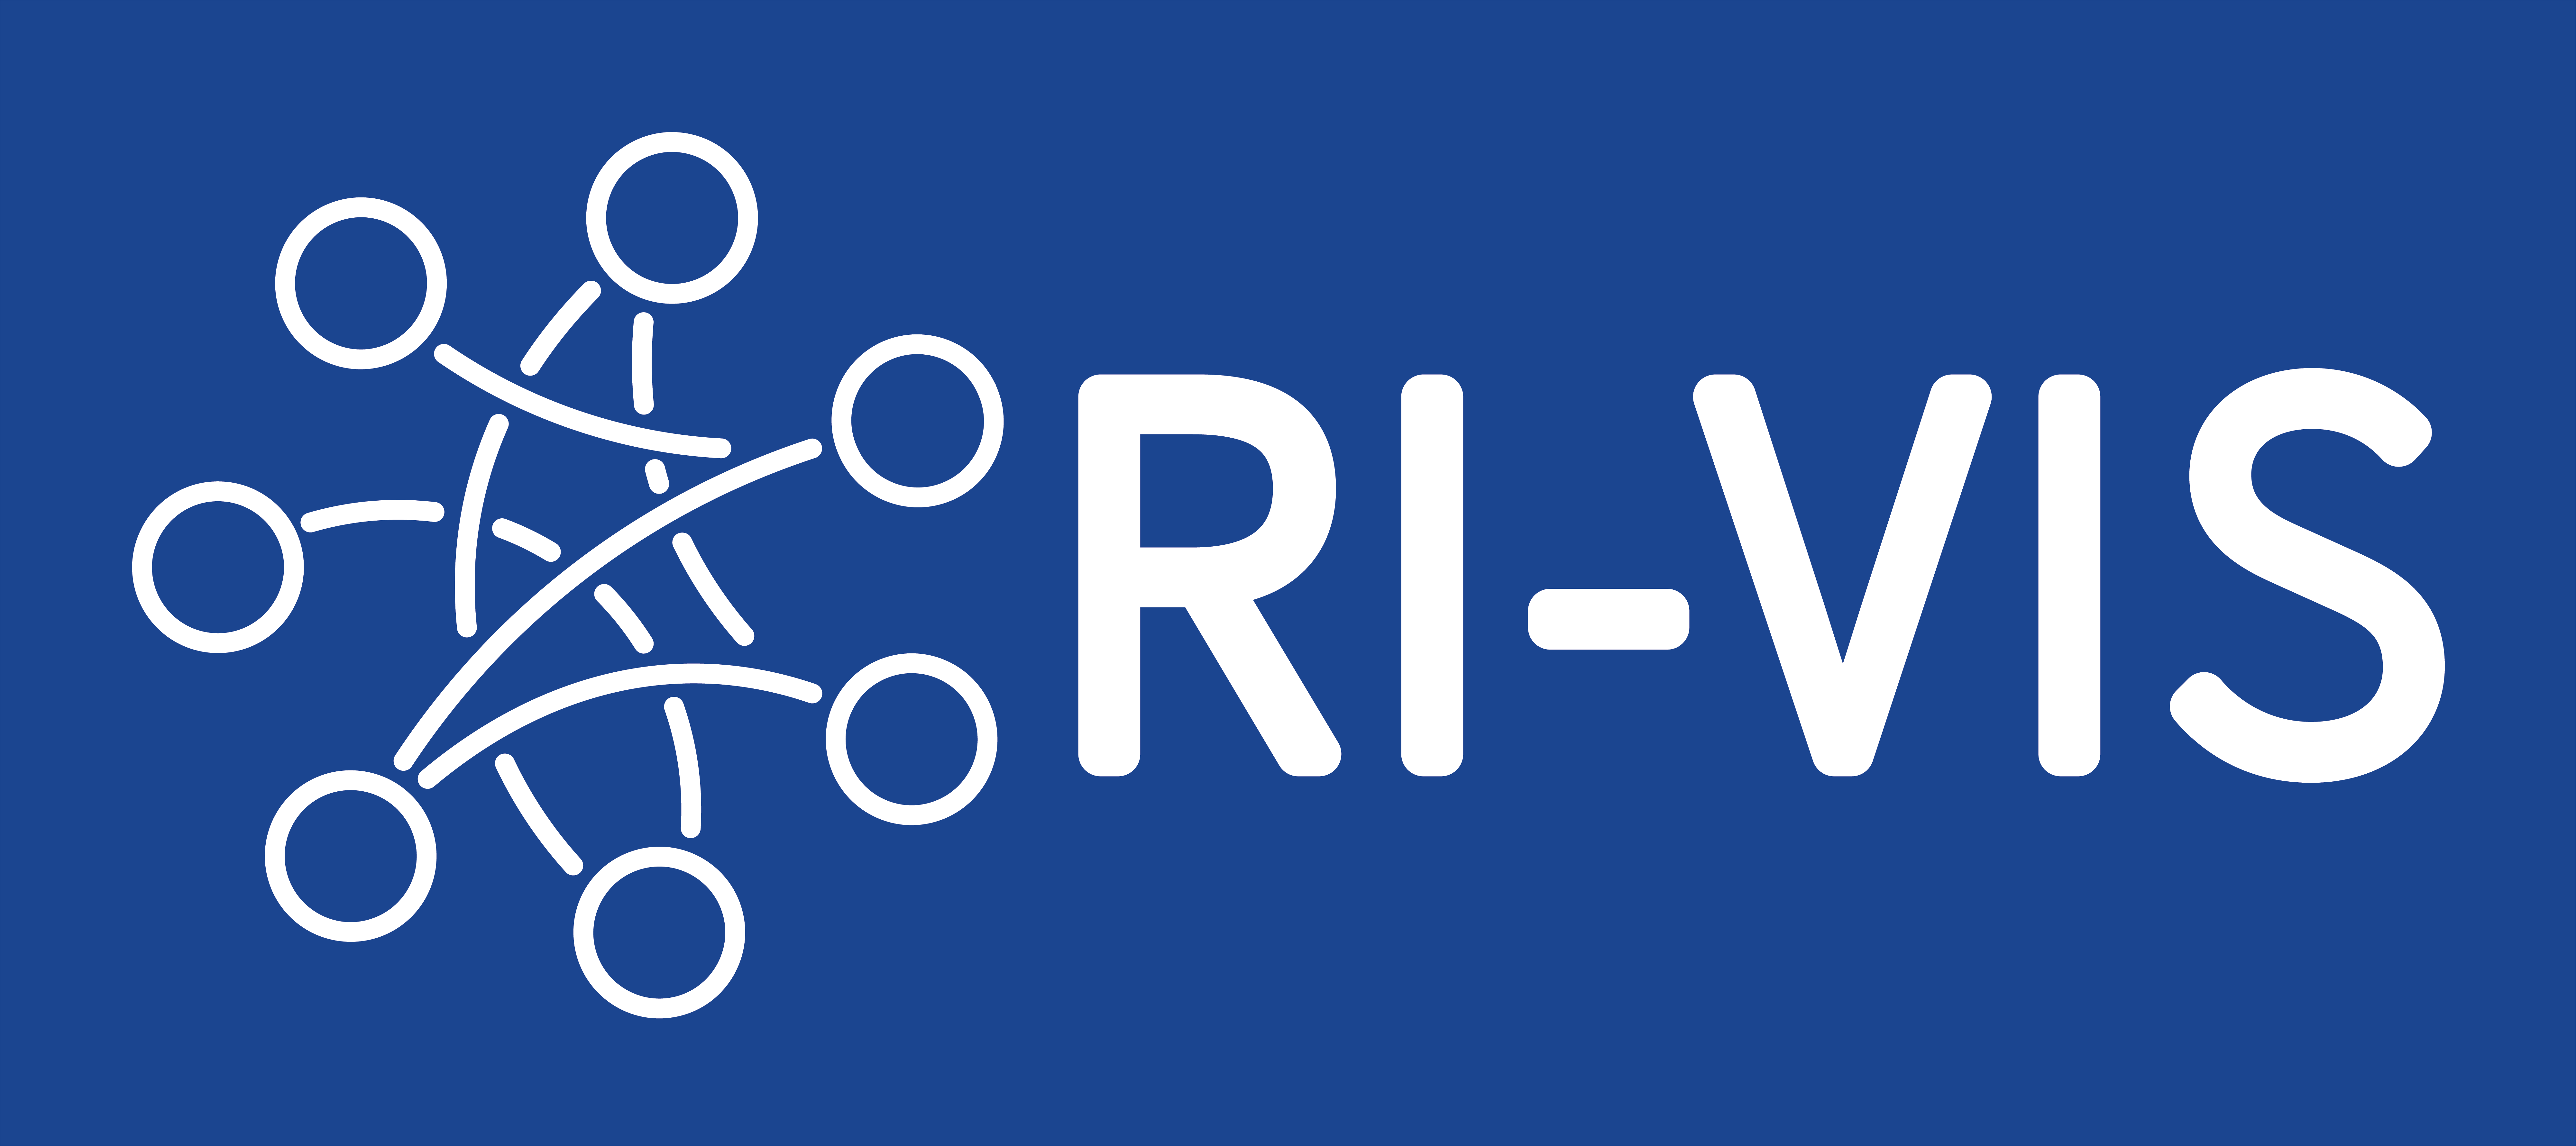 RI-VIS logo